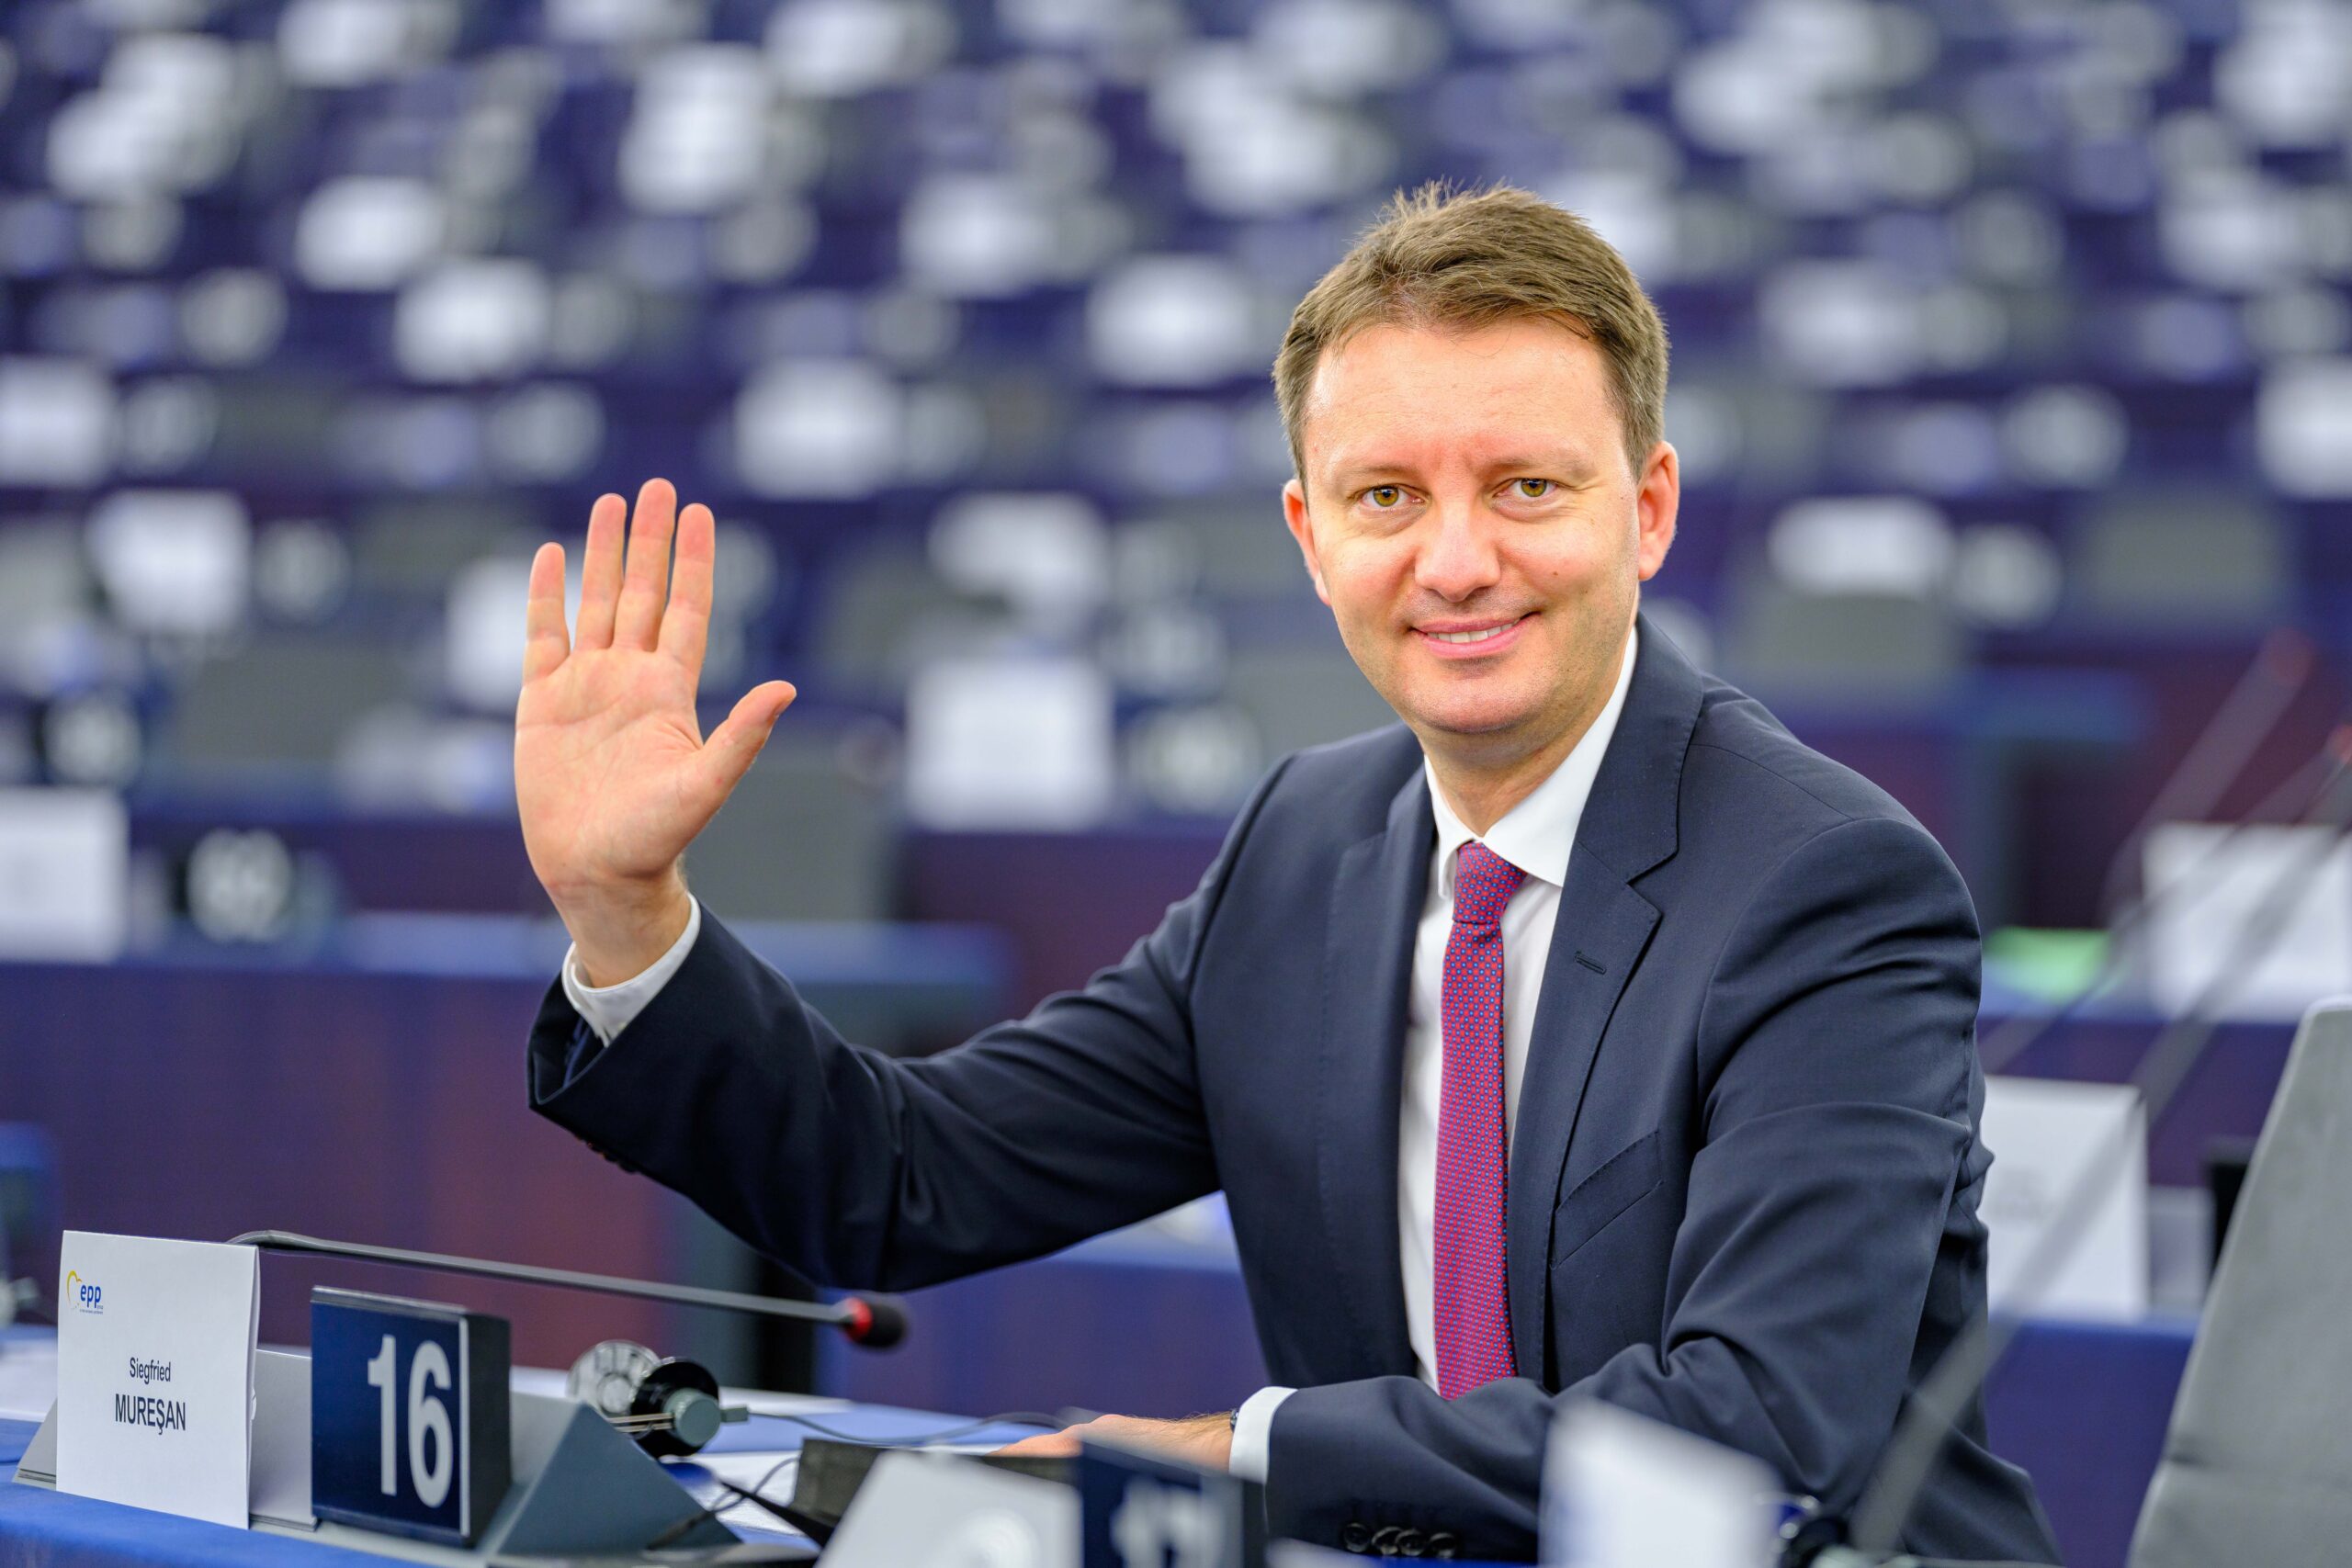 Siegfried Mureșan în plenul Parlamentului European